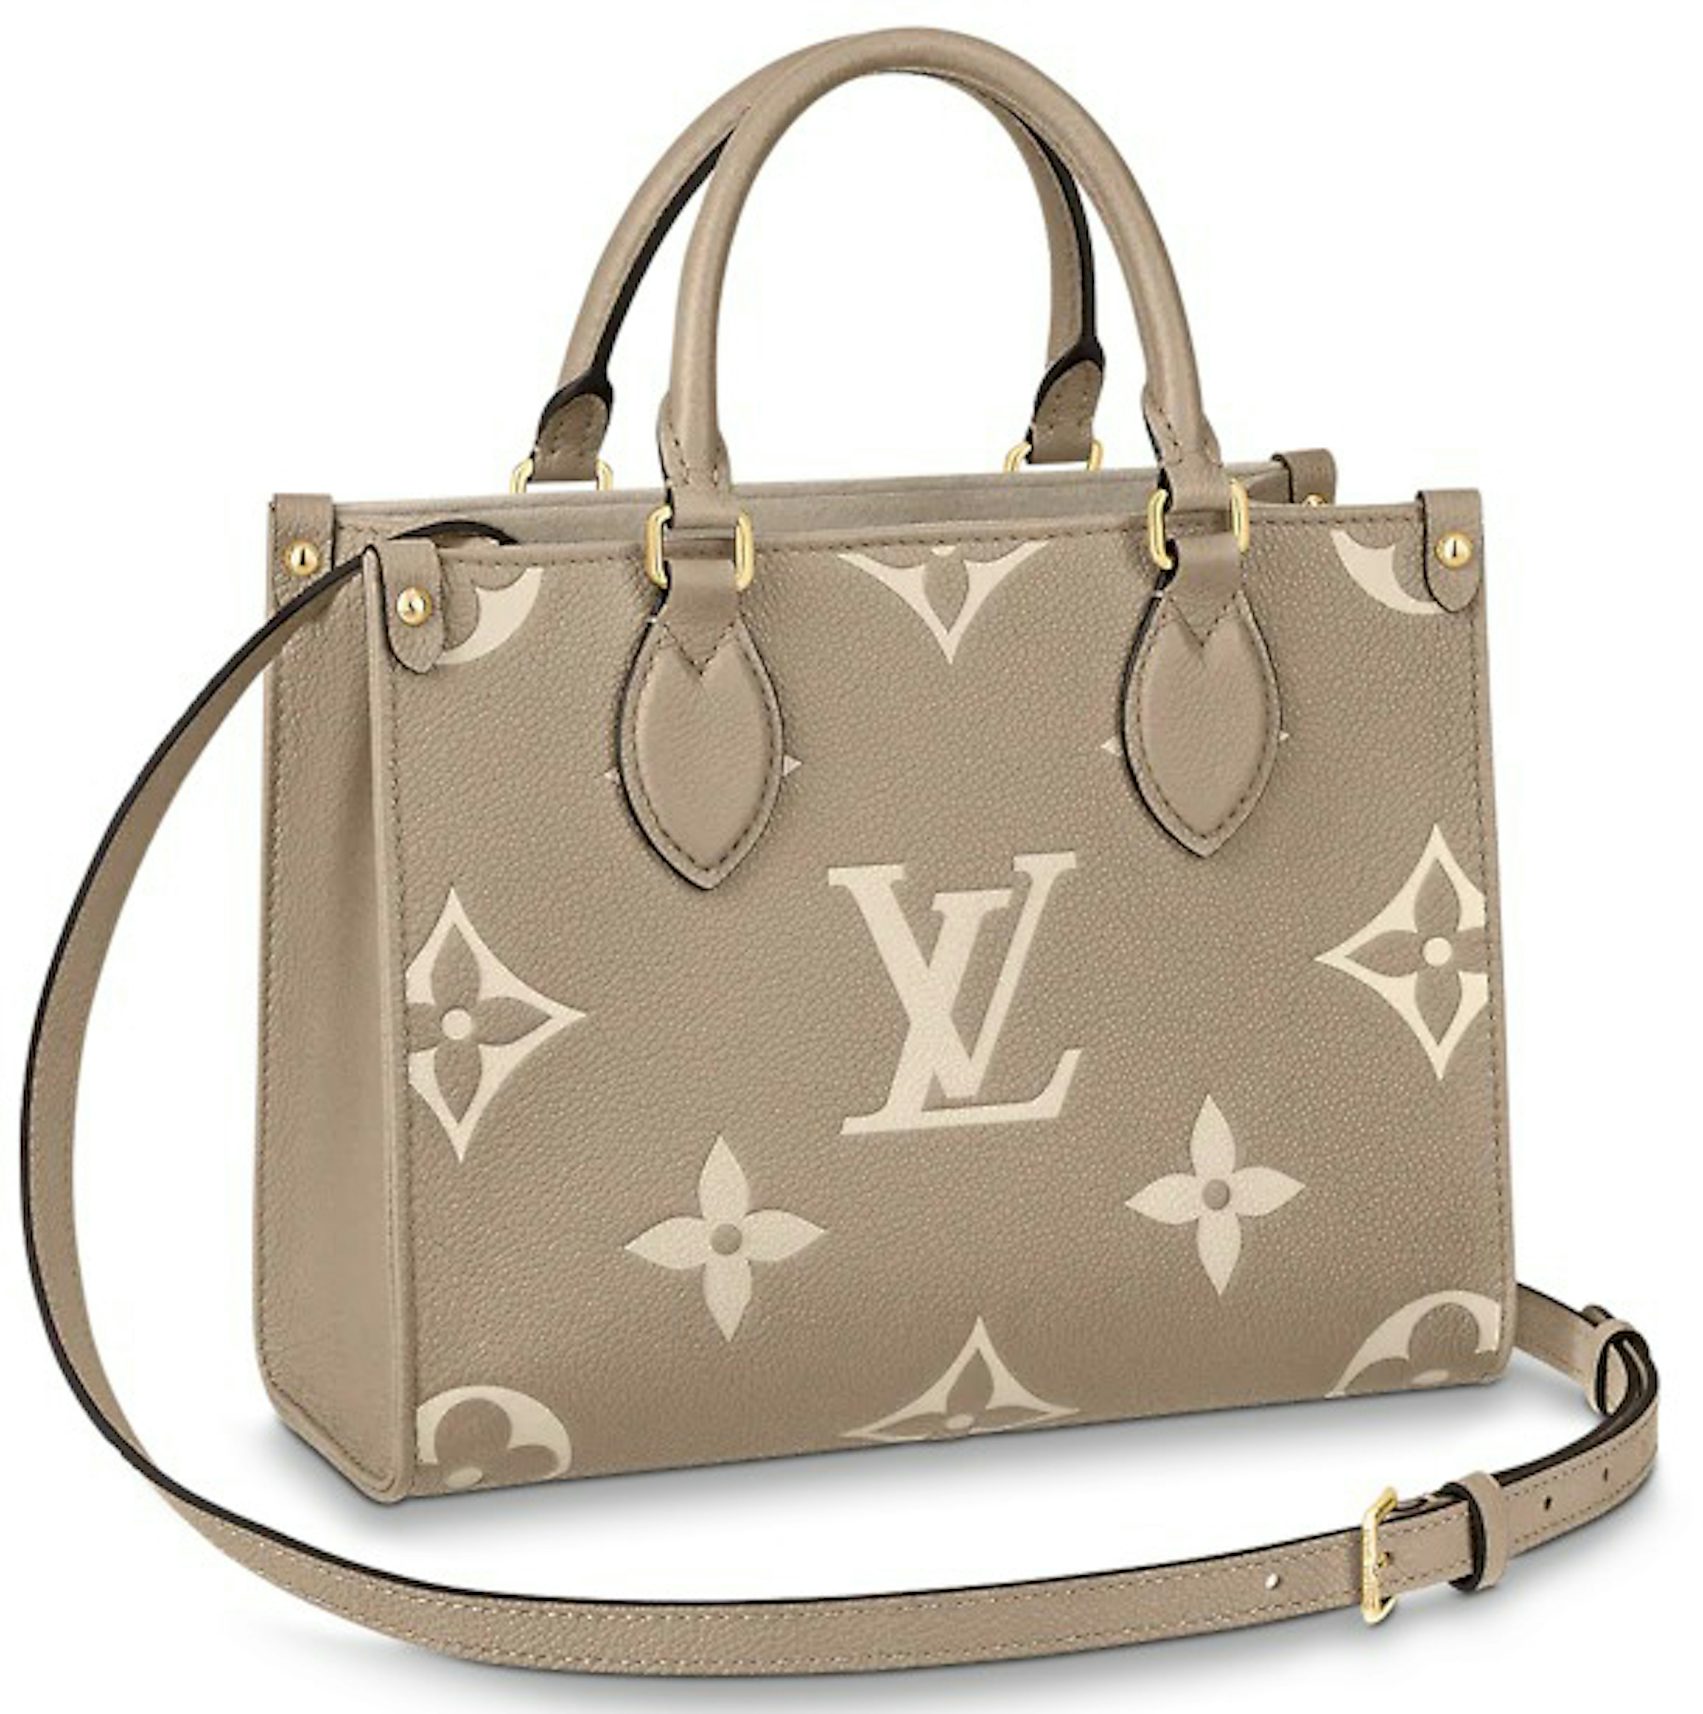 Louis Vuitton - Onthego PM Bag - Kaki Cream - Monogram Leather - Women - Luxury